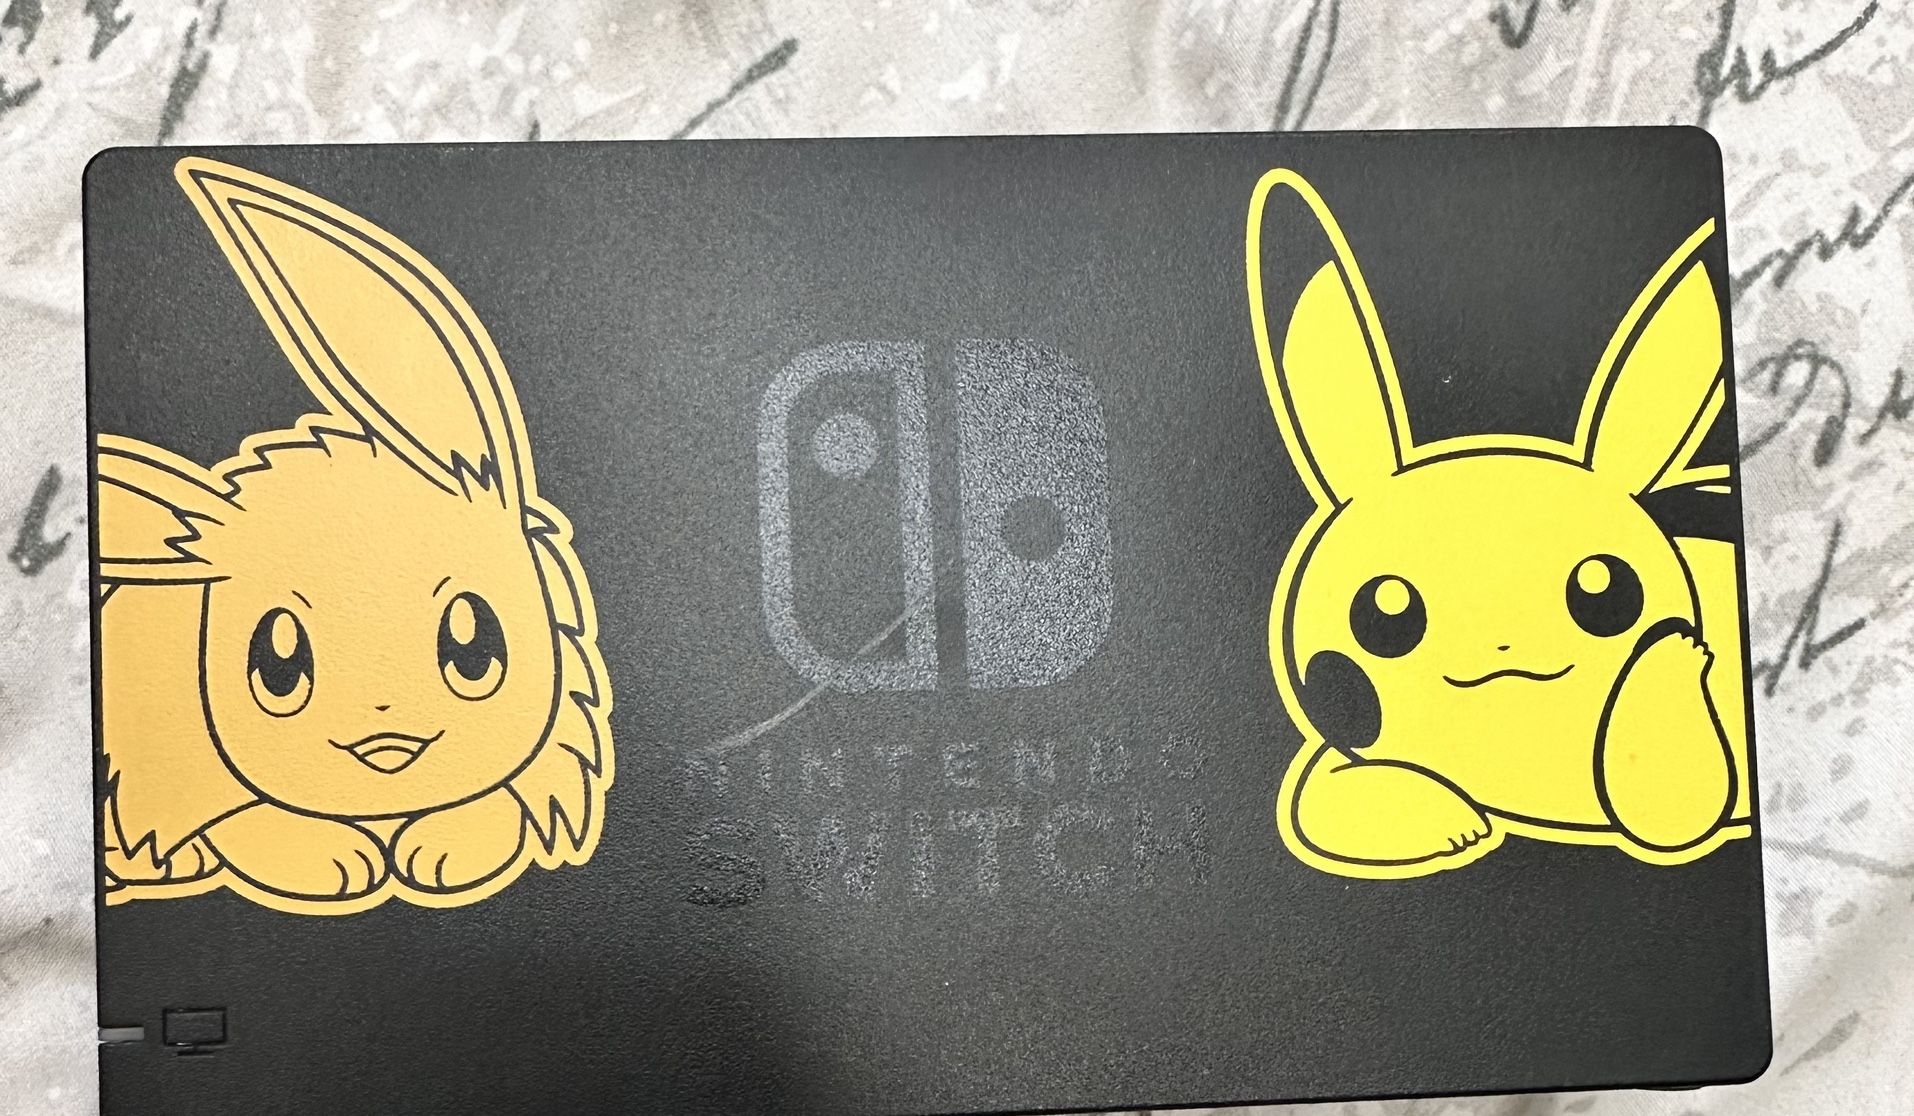 Used Pokémon Pikachu and Eevee Nintendo Switch